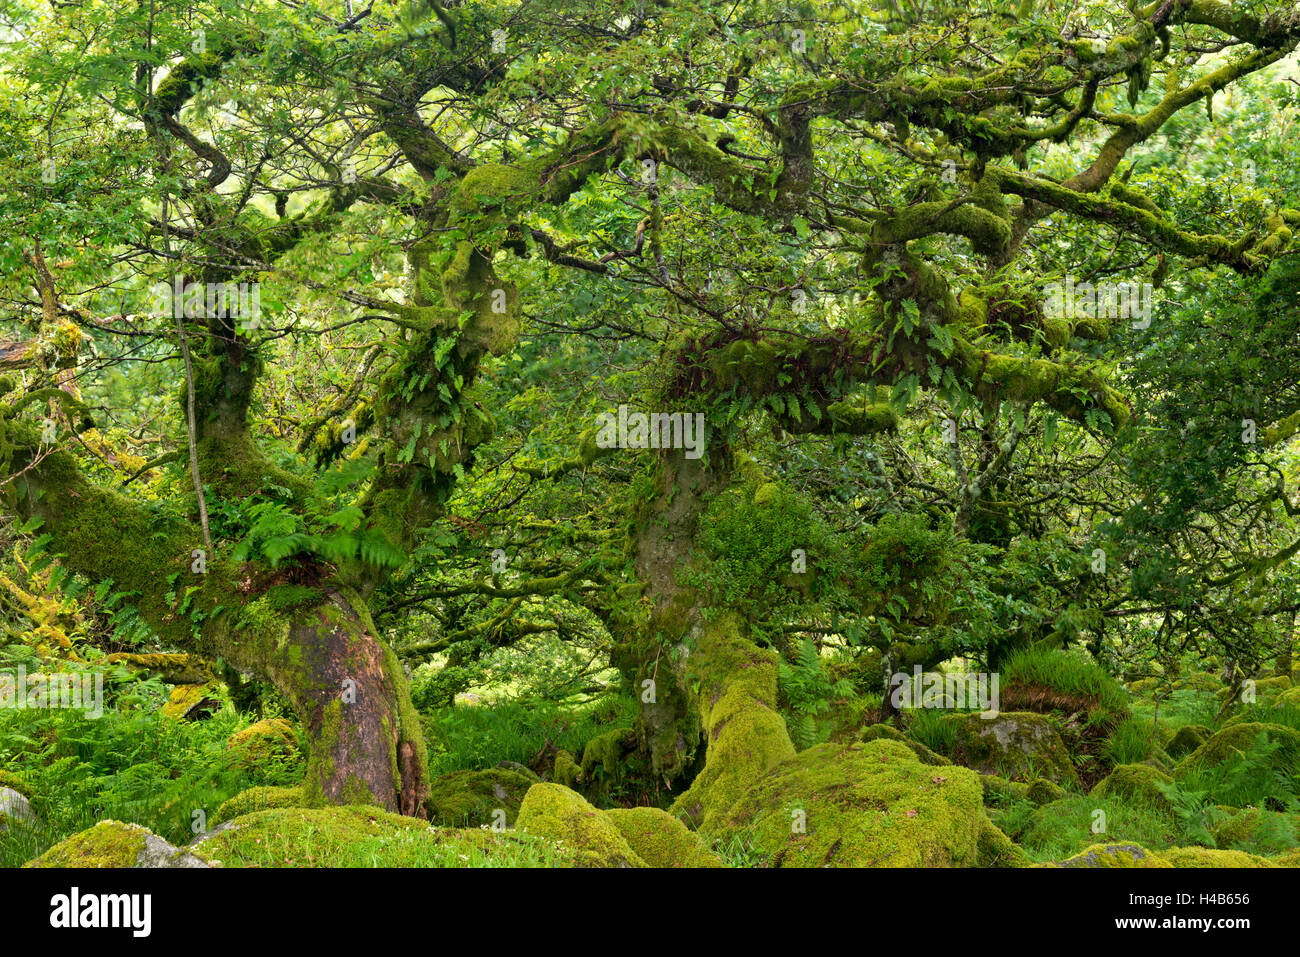 Lichens noueux couvertes de chênes rabougris poussant dans Wistman's Wood, Dartmoor National Park, Devon, Angleterre. Banque D'Images